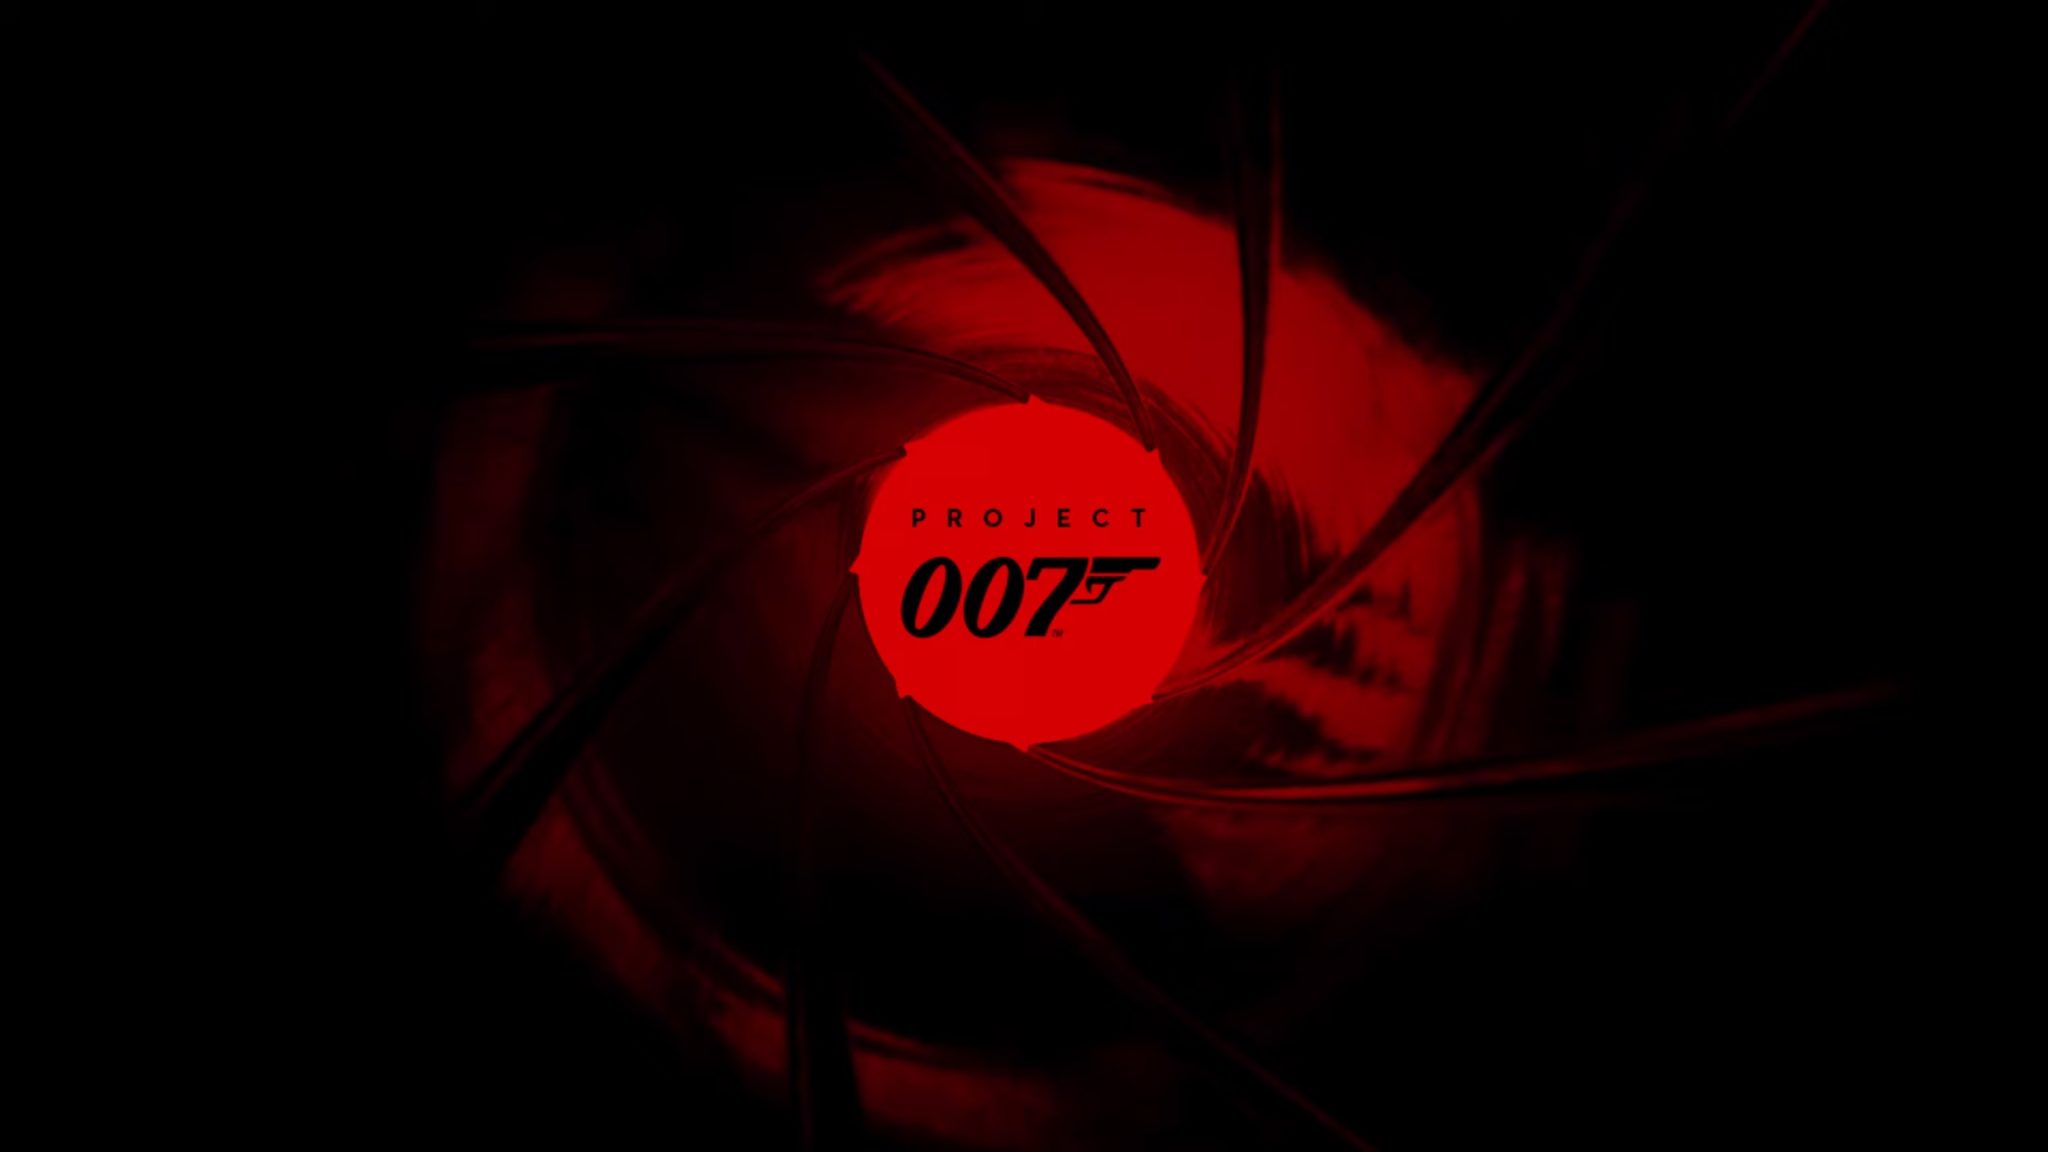 James Bond project 007